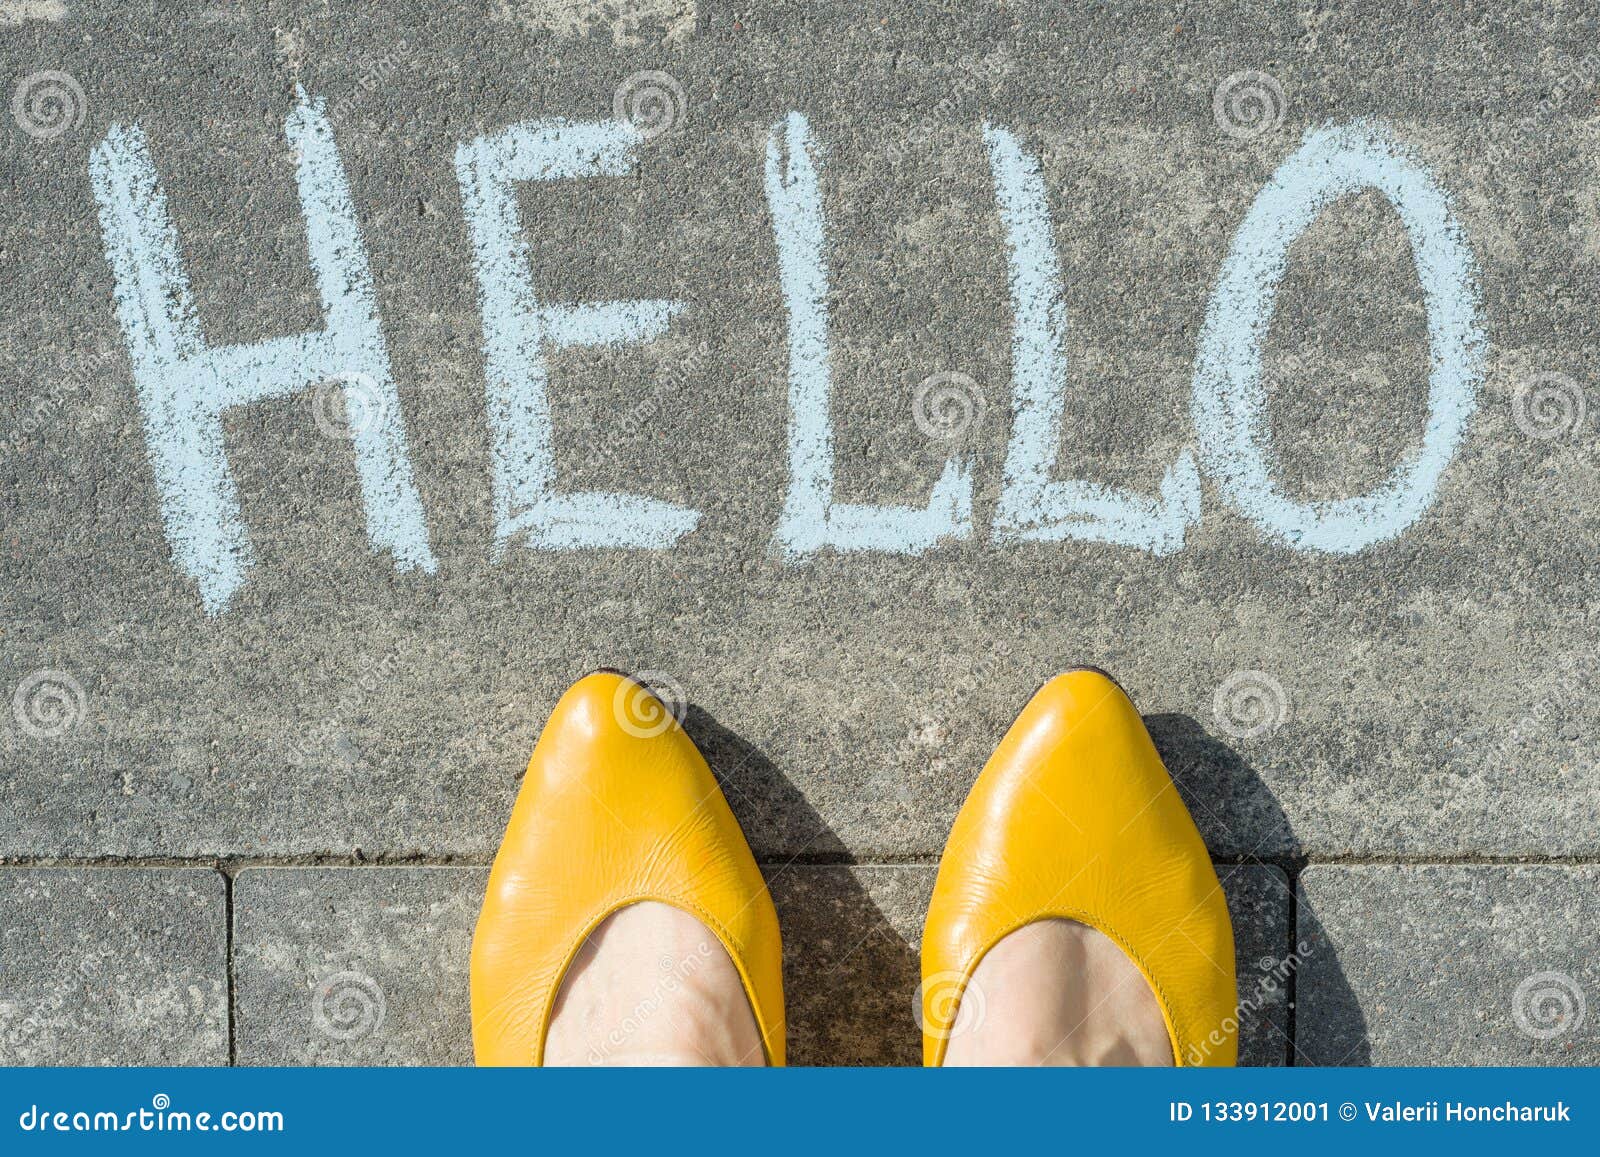 Алло как пишется. Hello написано краской. Feet слово. Обои где написано hello. Hello Chalk.